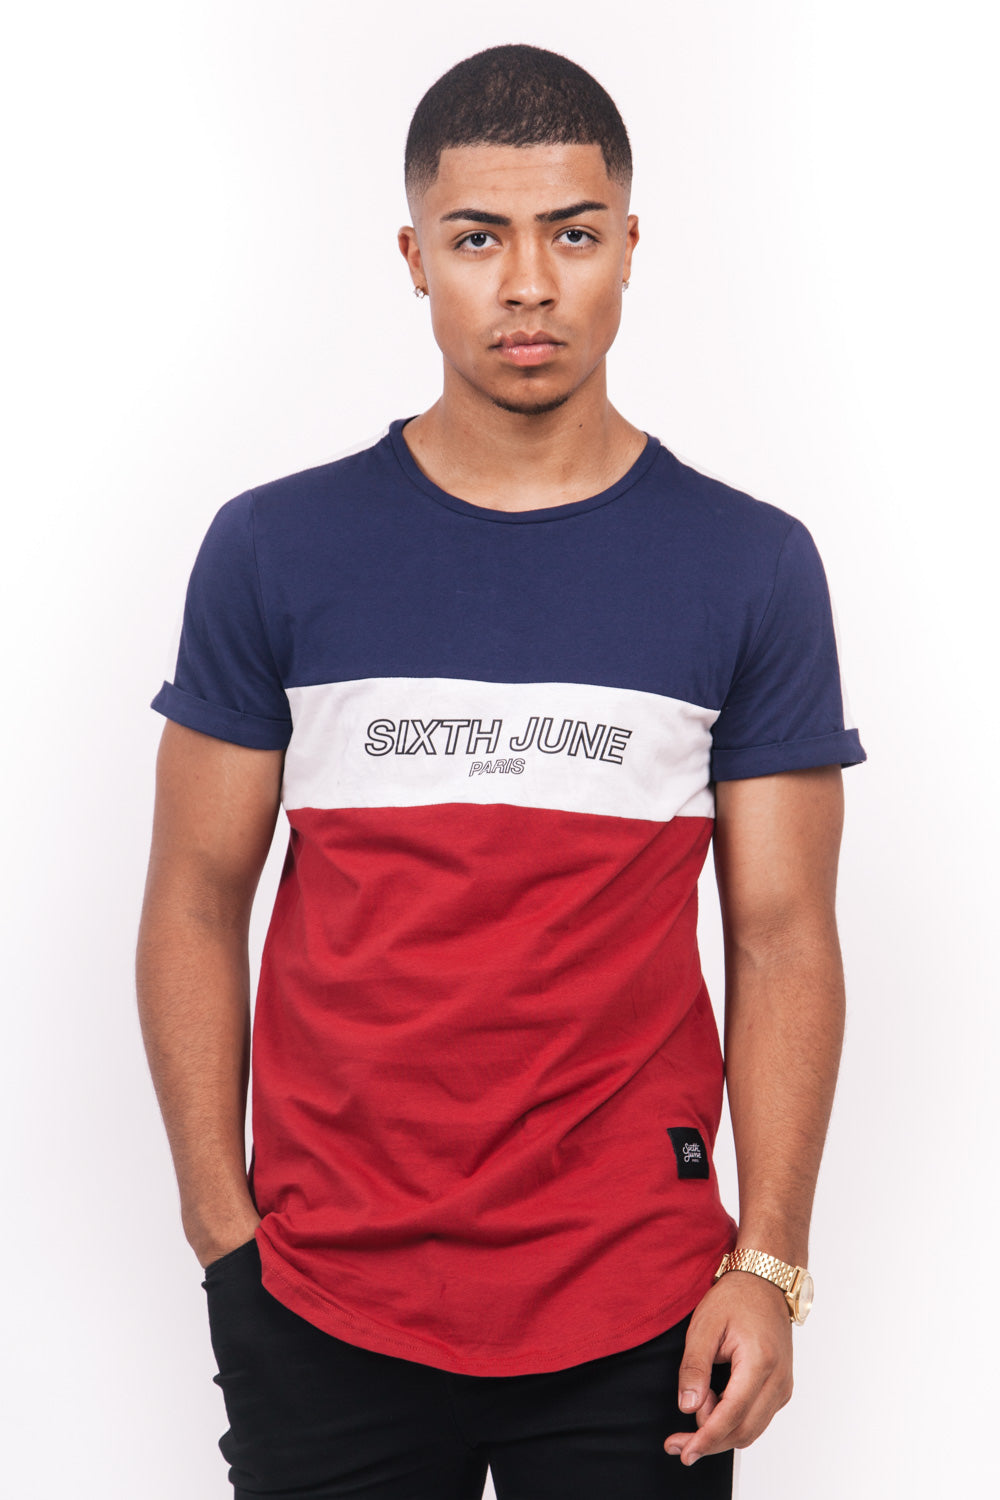 Sixth June - T-shirt tricolore texte bleu rouge blanc